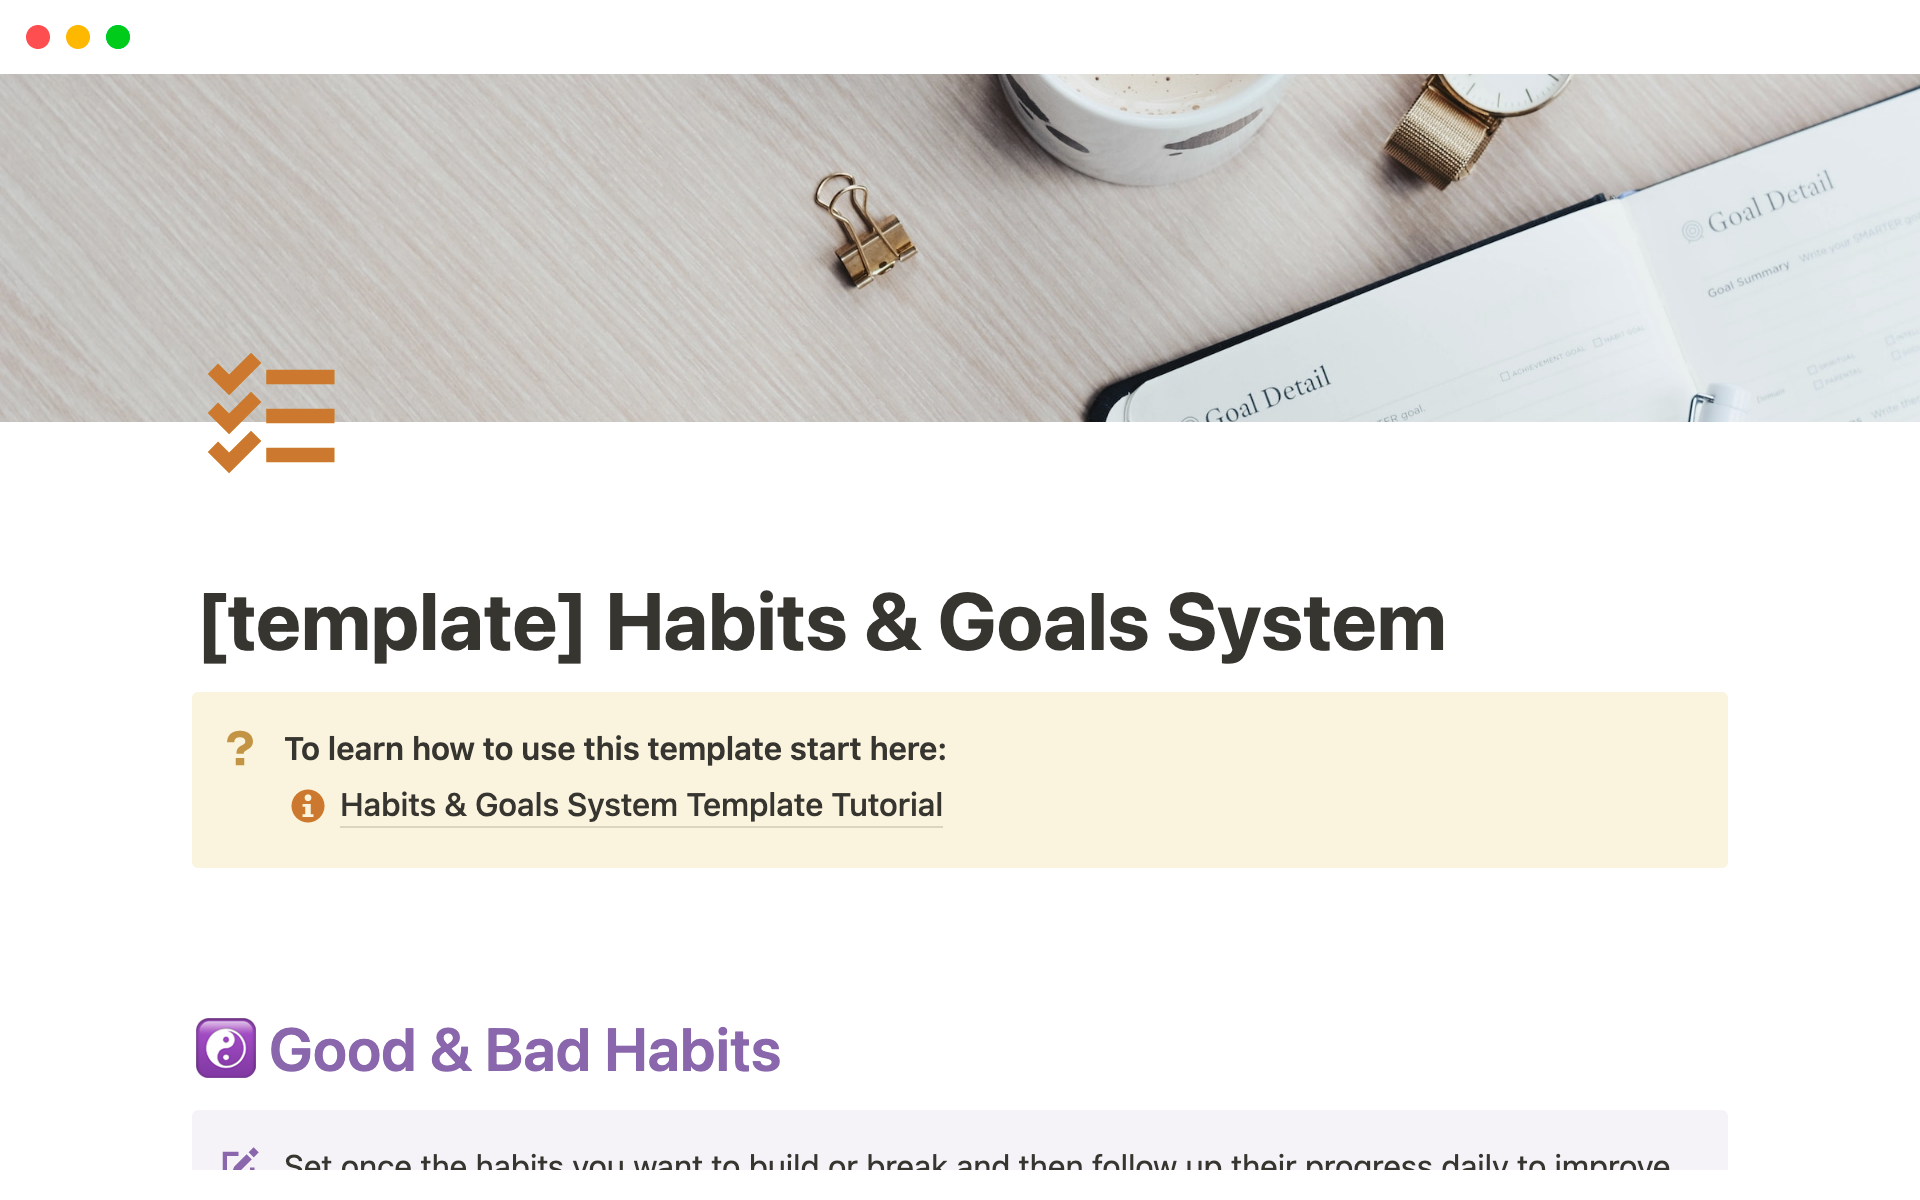 Vista previa de una plantilla para Habits & Goals System